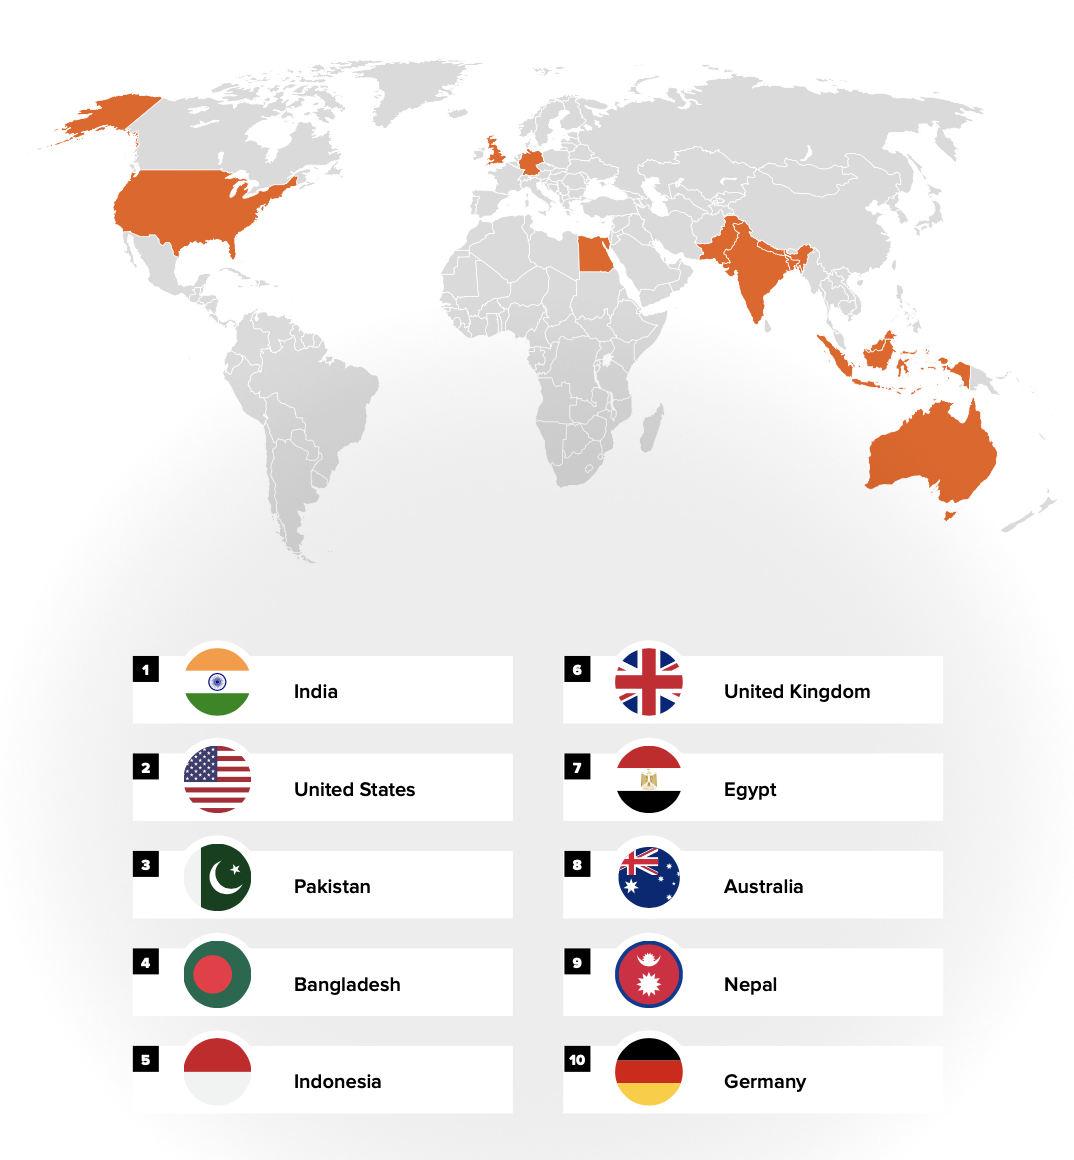 受访者报告生活的十大国家